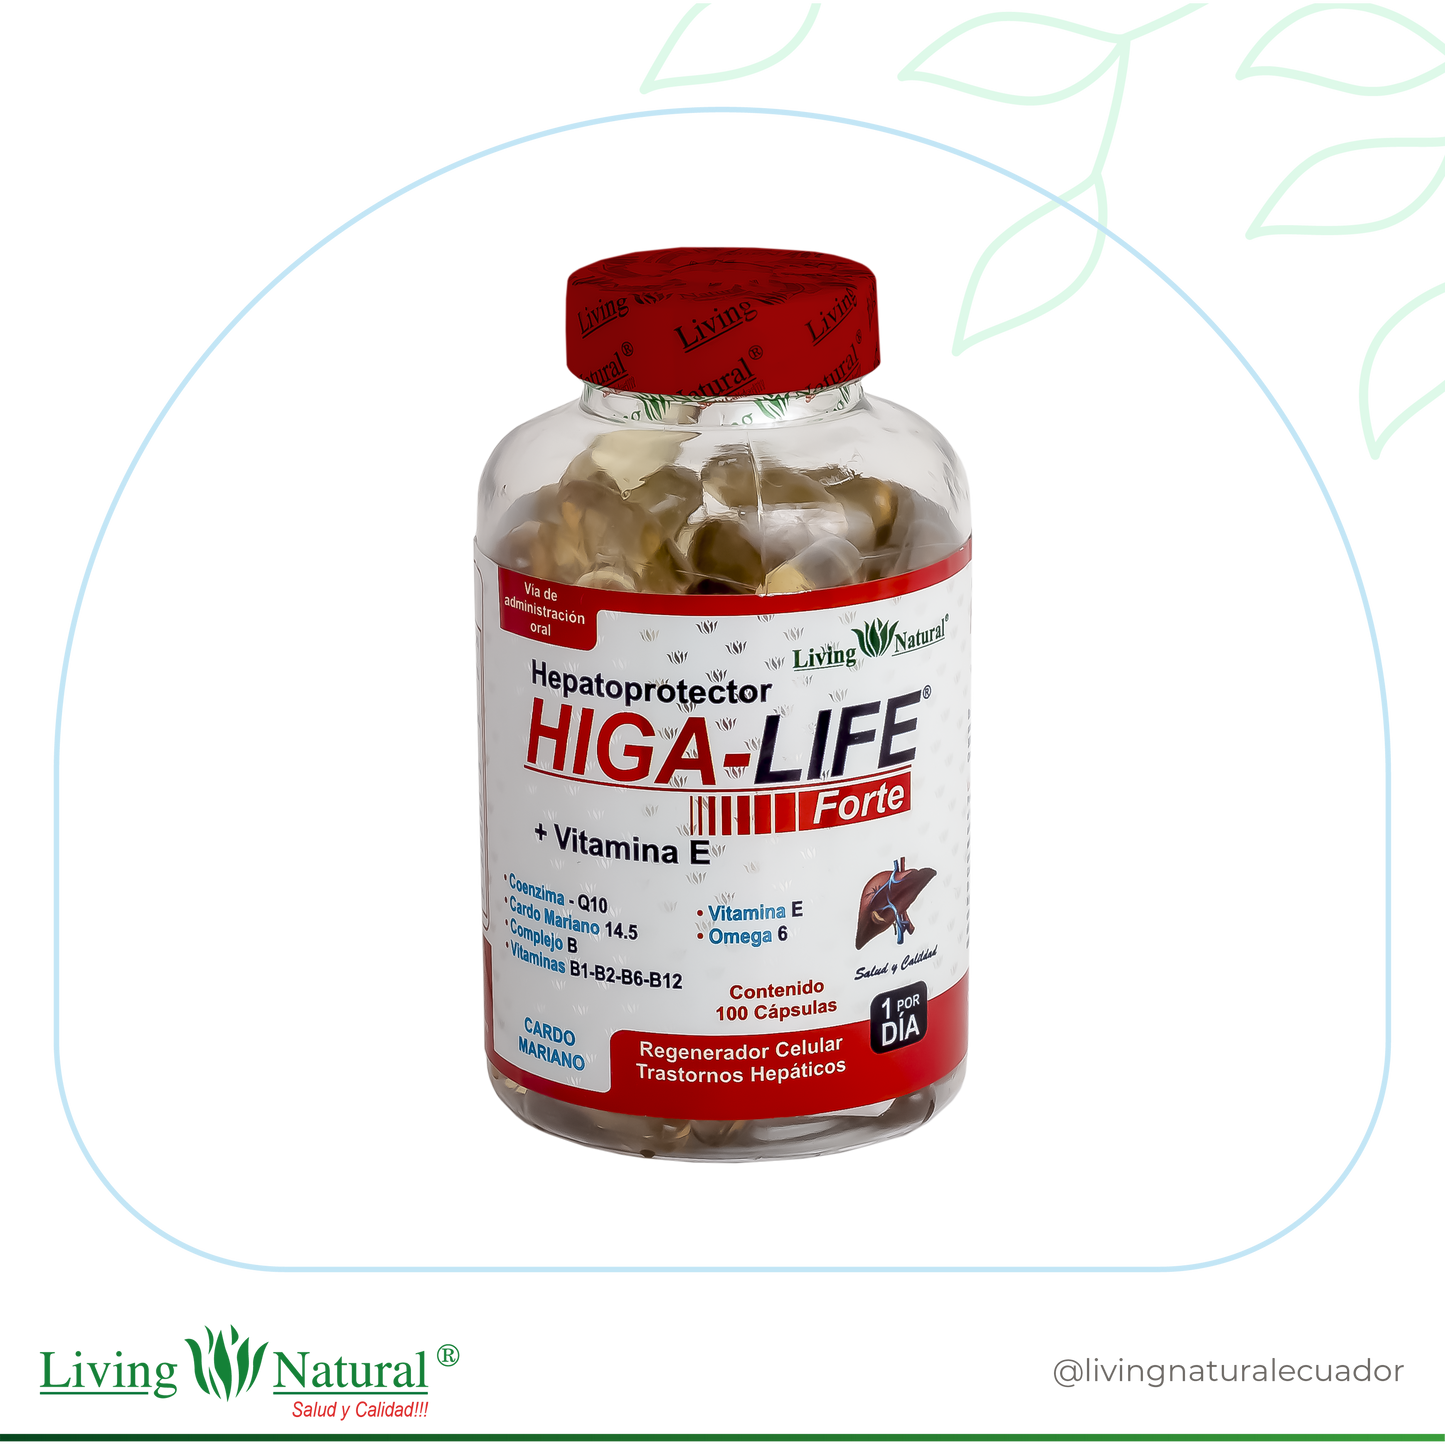 HIGA-LIFE SOFTGEL | 1000 mg | X30, X60, X100